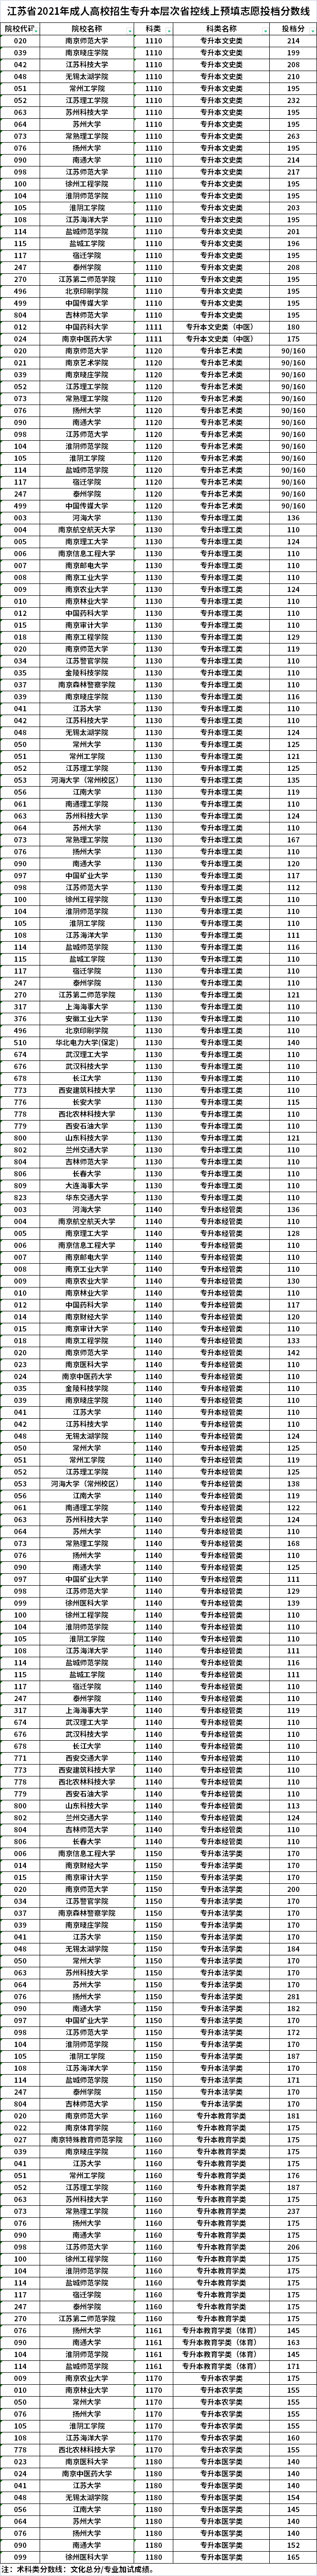 江苏省2021年成人高校招生专升本层次省控线上预填志愿投档分数线.png